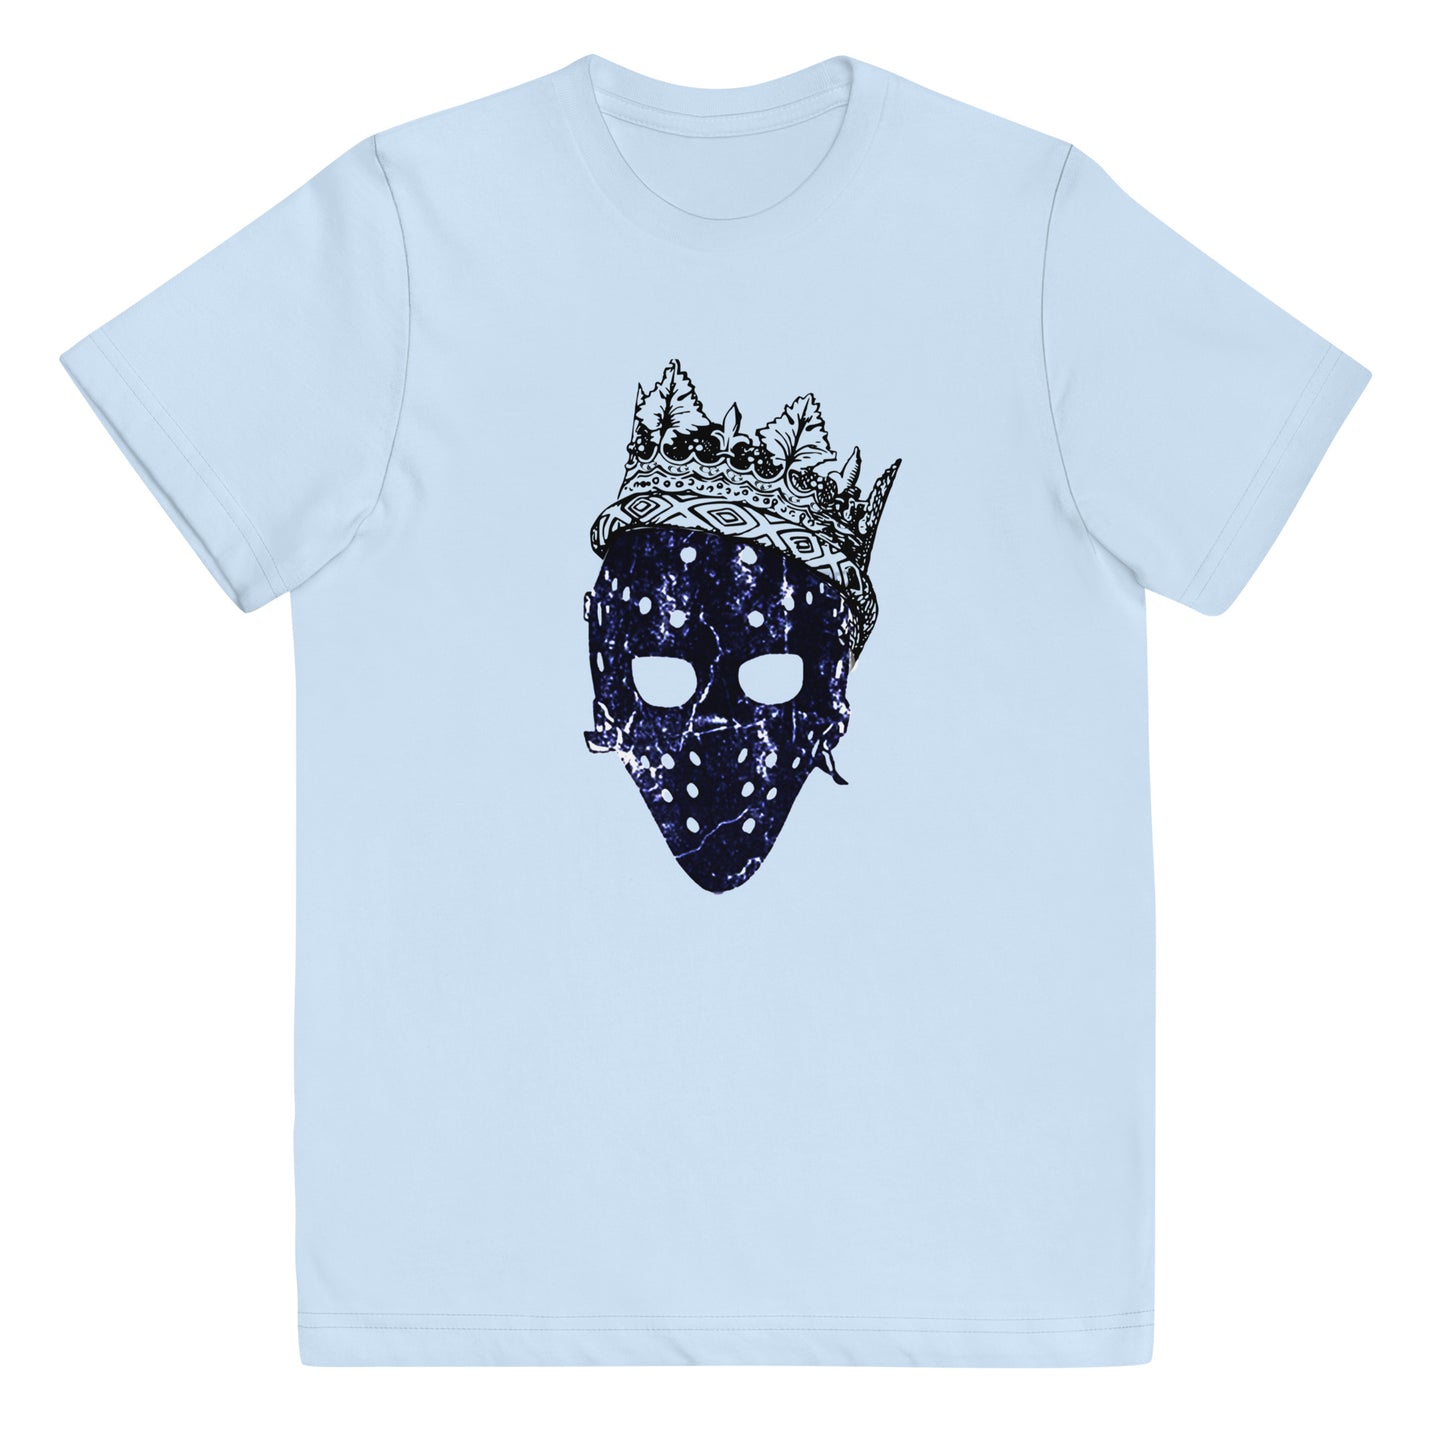 King Tendy Youth t-shirt